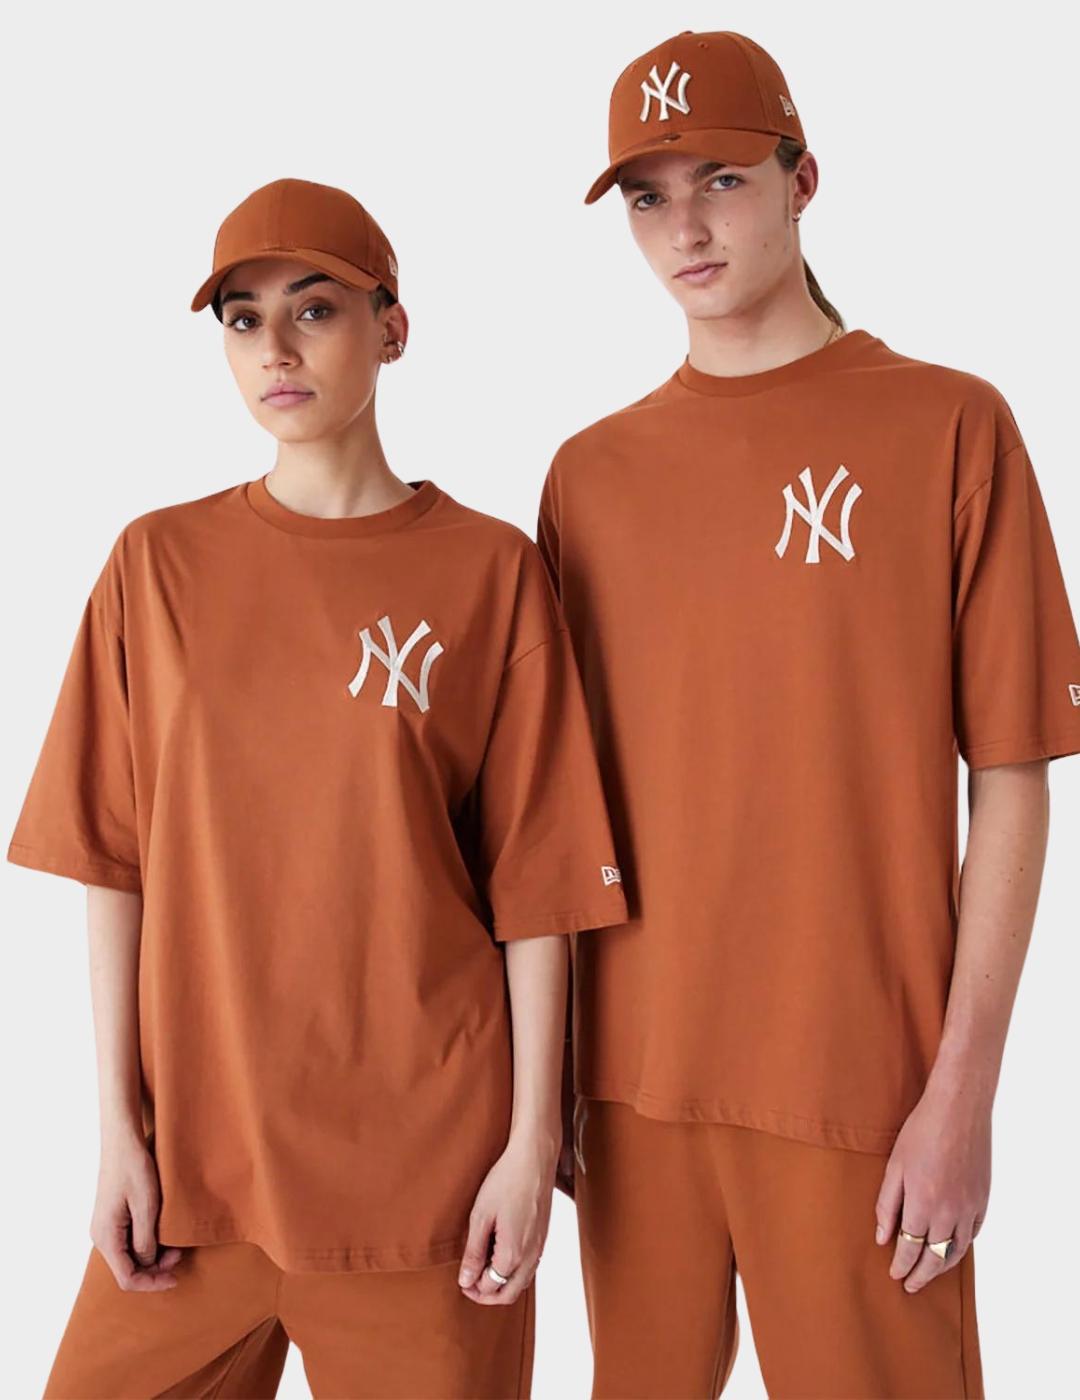 Camiseta New Era NY marrón hombre